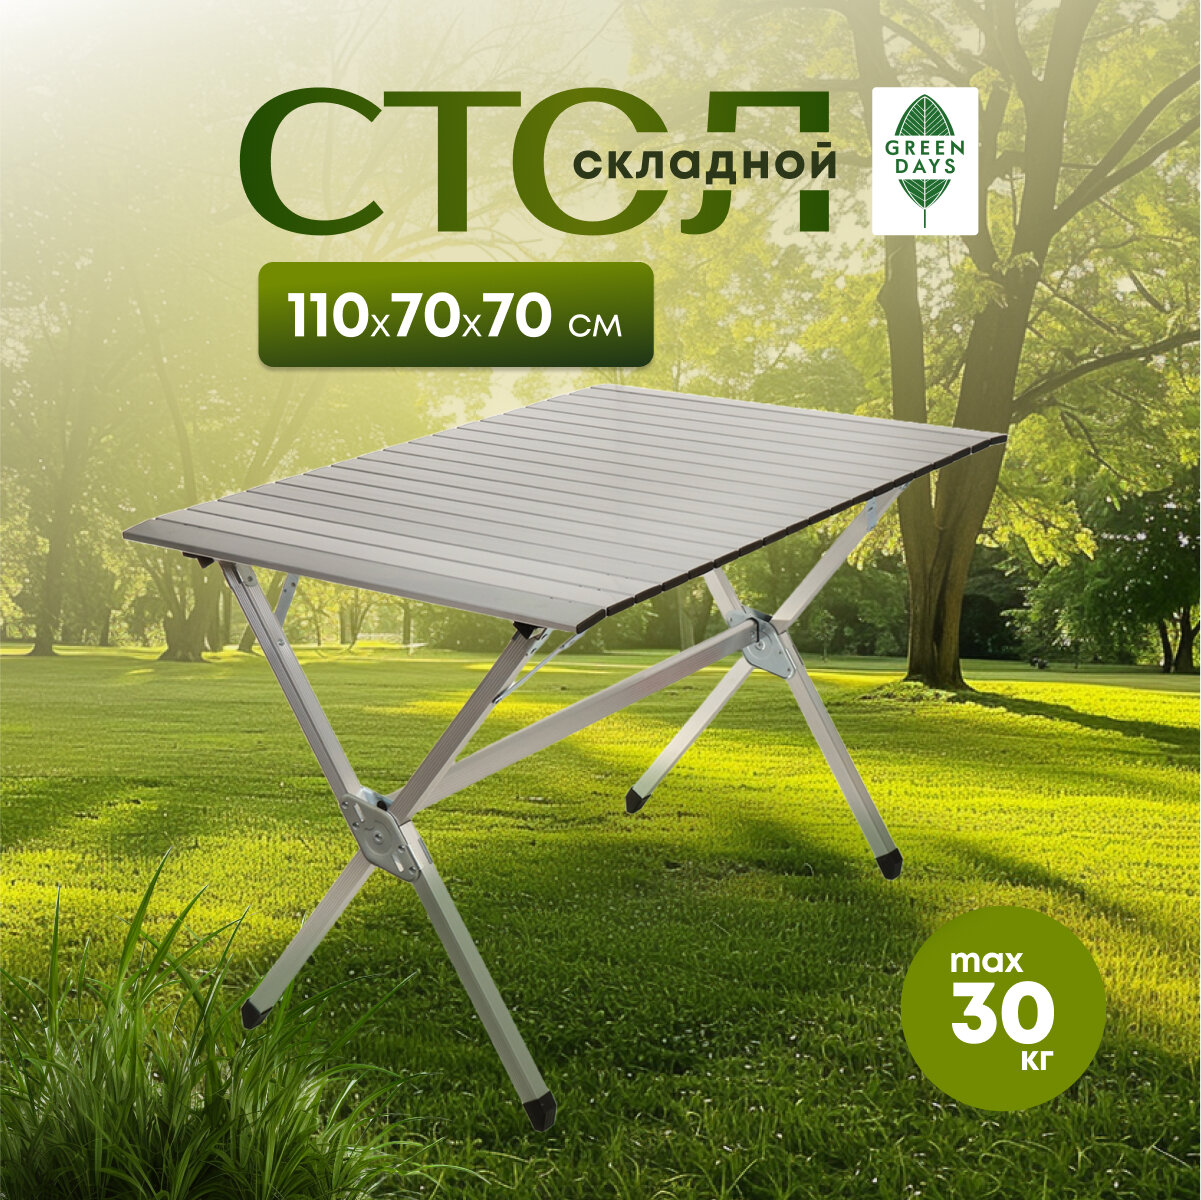 Стол складной алюминий, прямоугольный, 110х70х70 см, Green Days, YTFT011